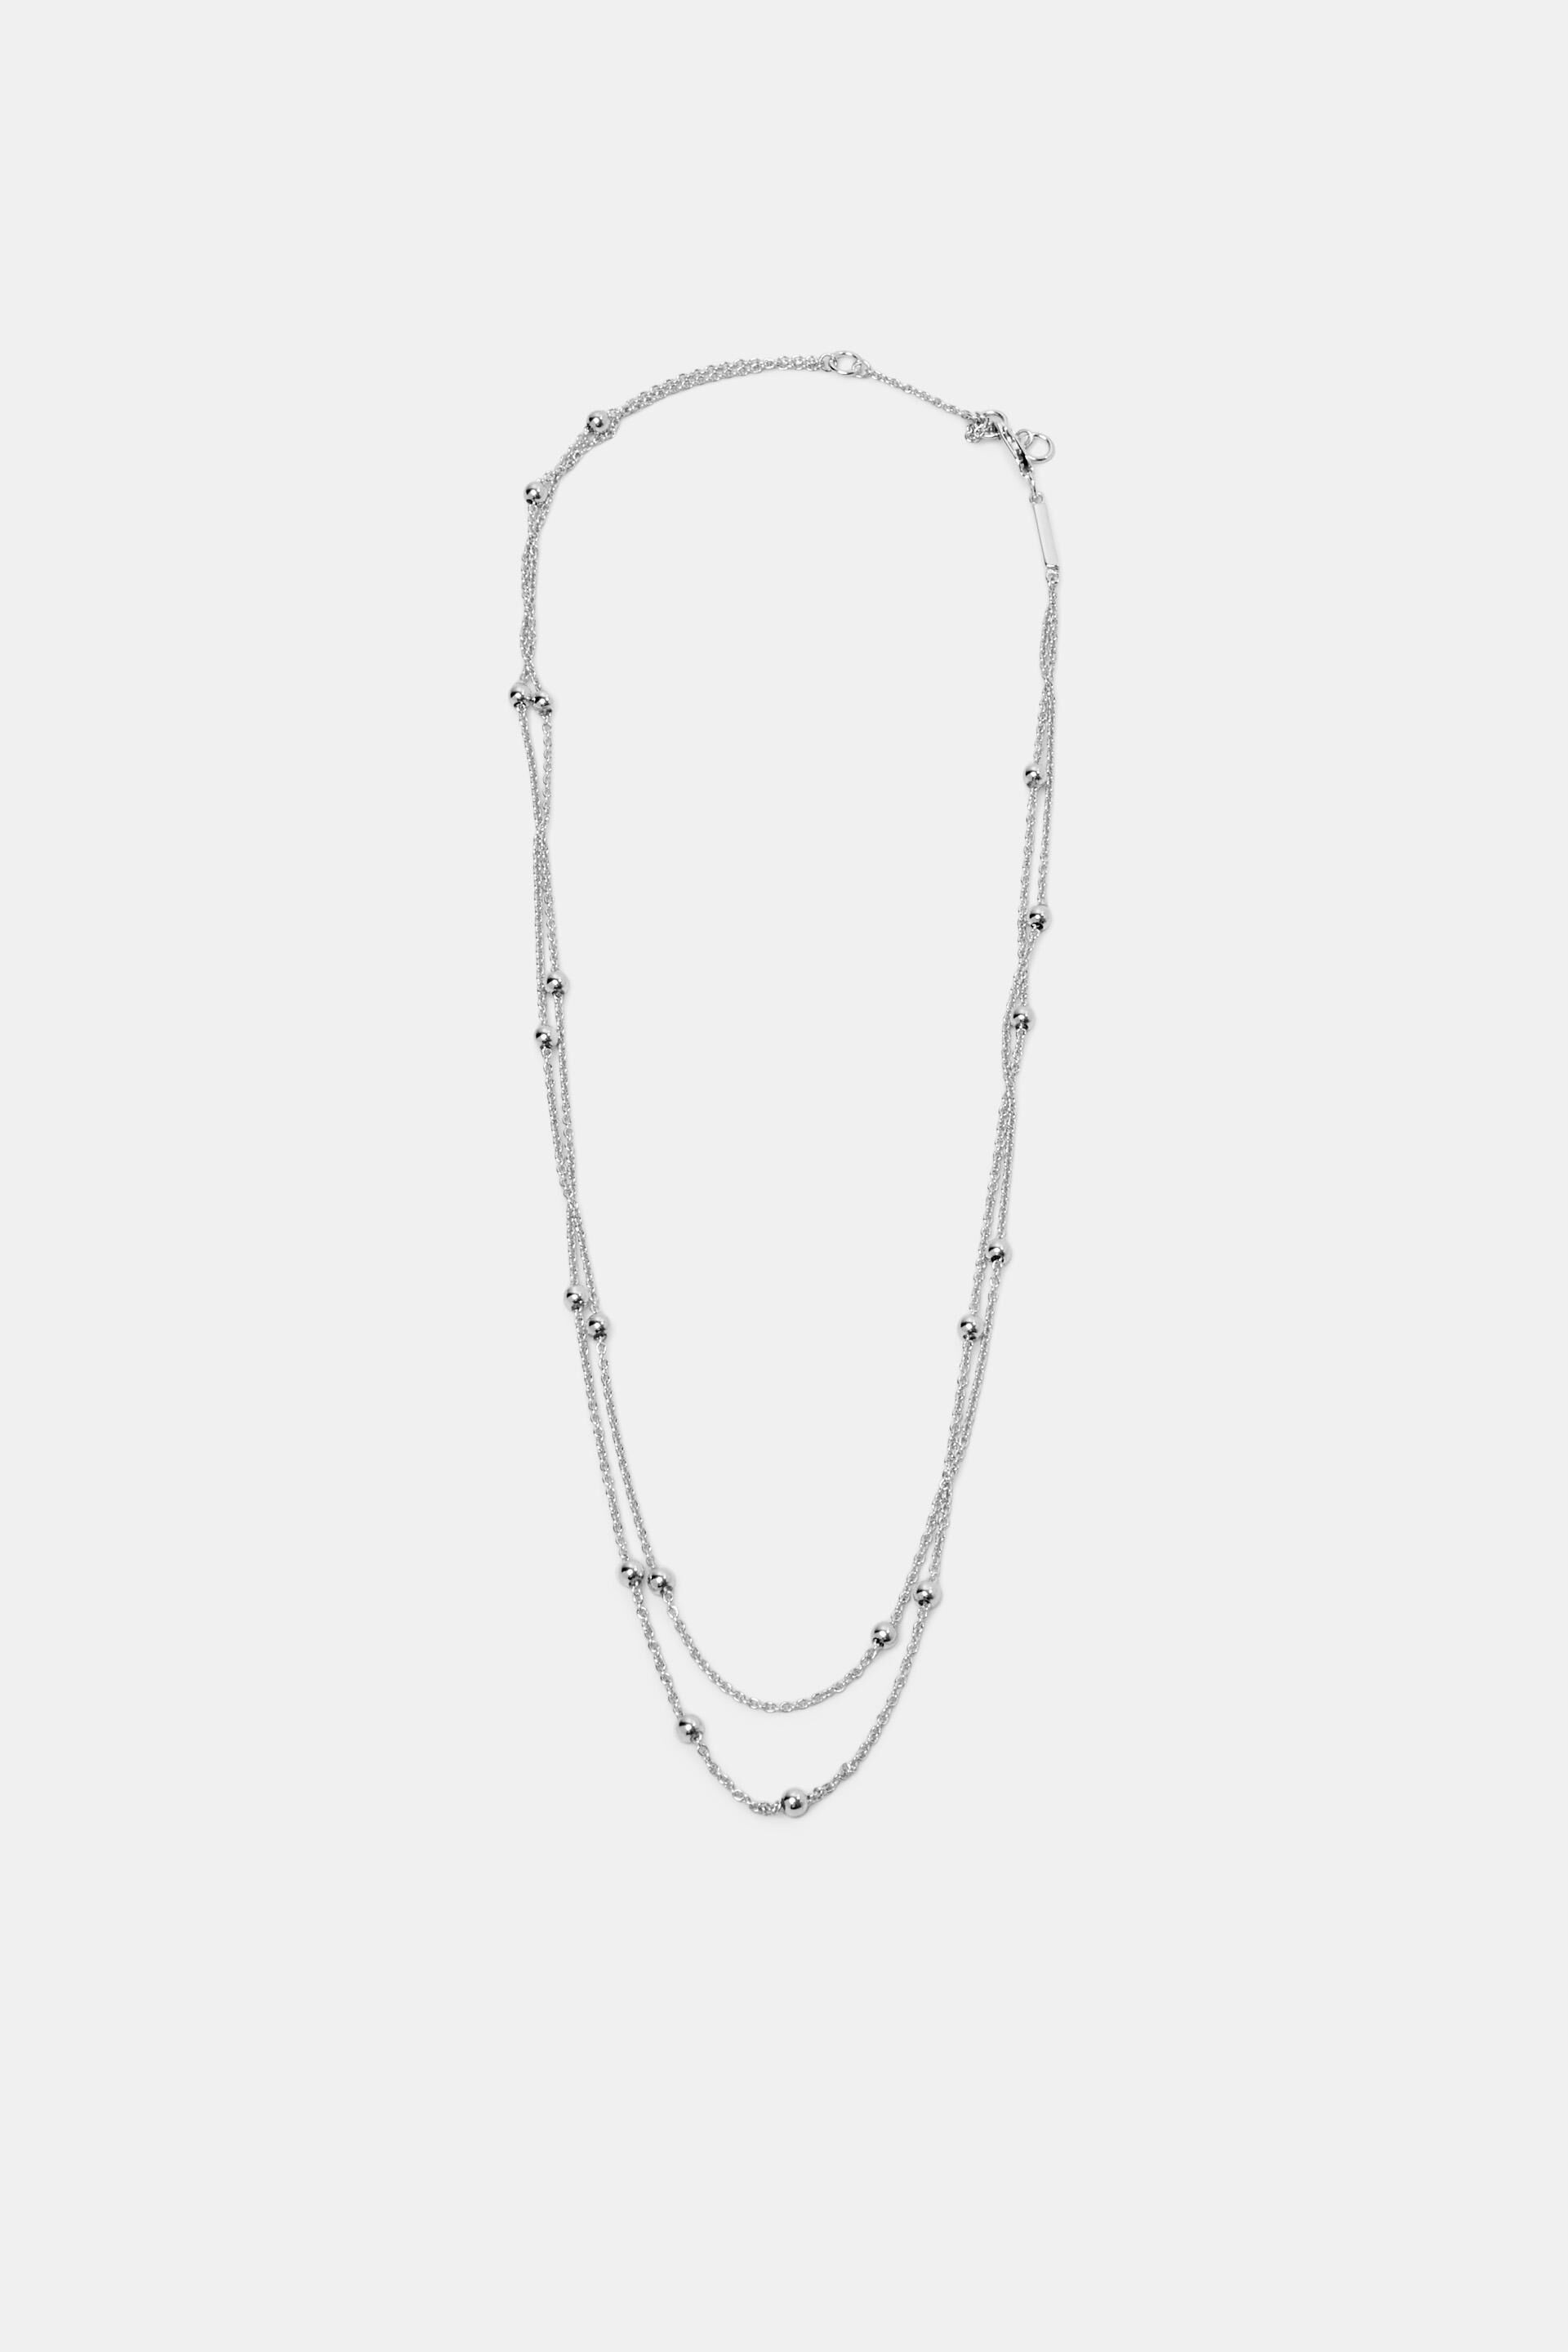 Esprit Online Store Necklaces